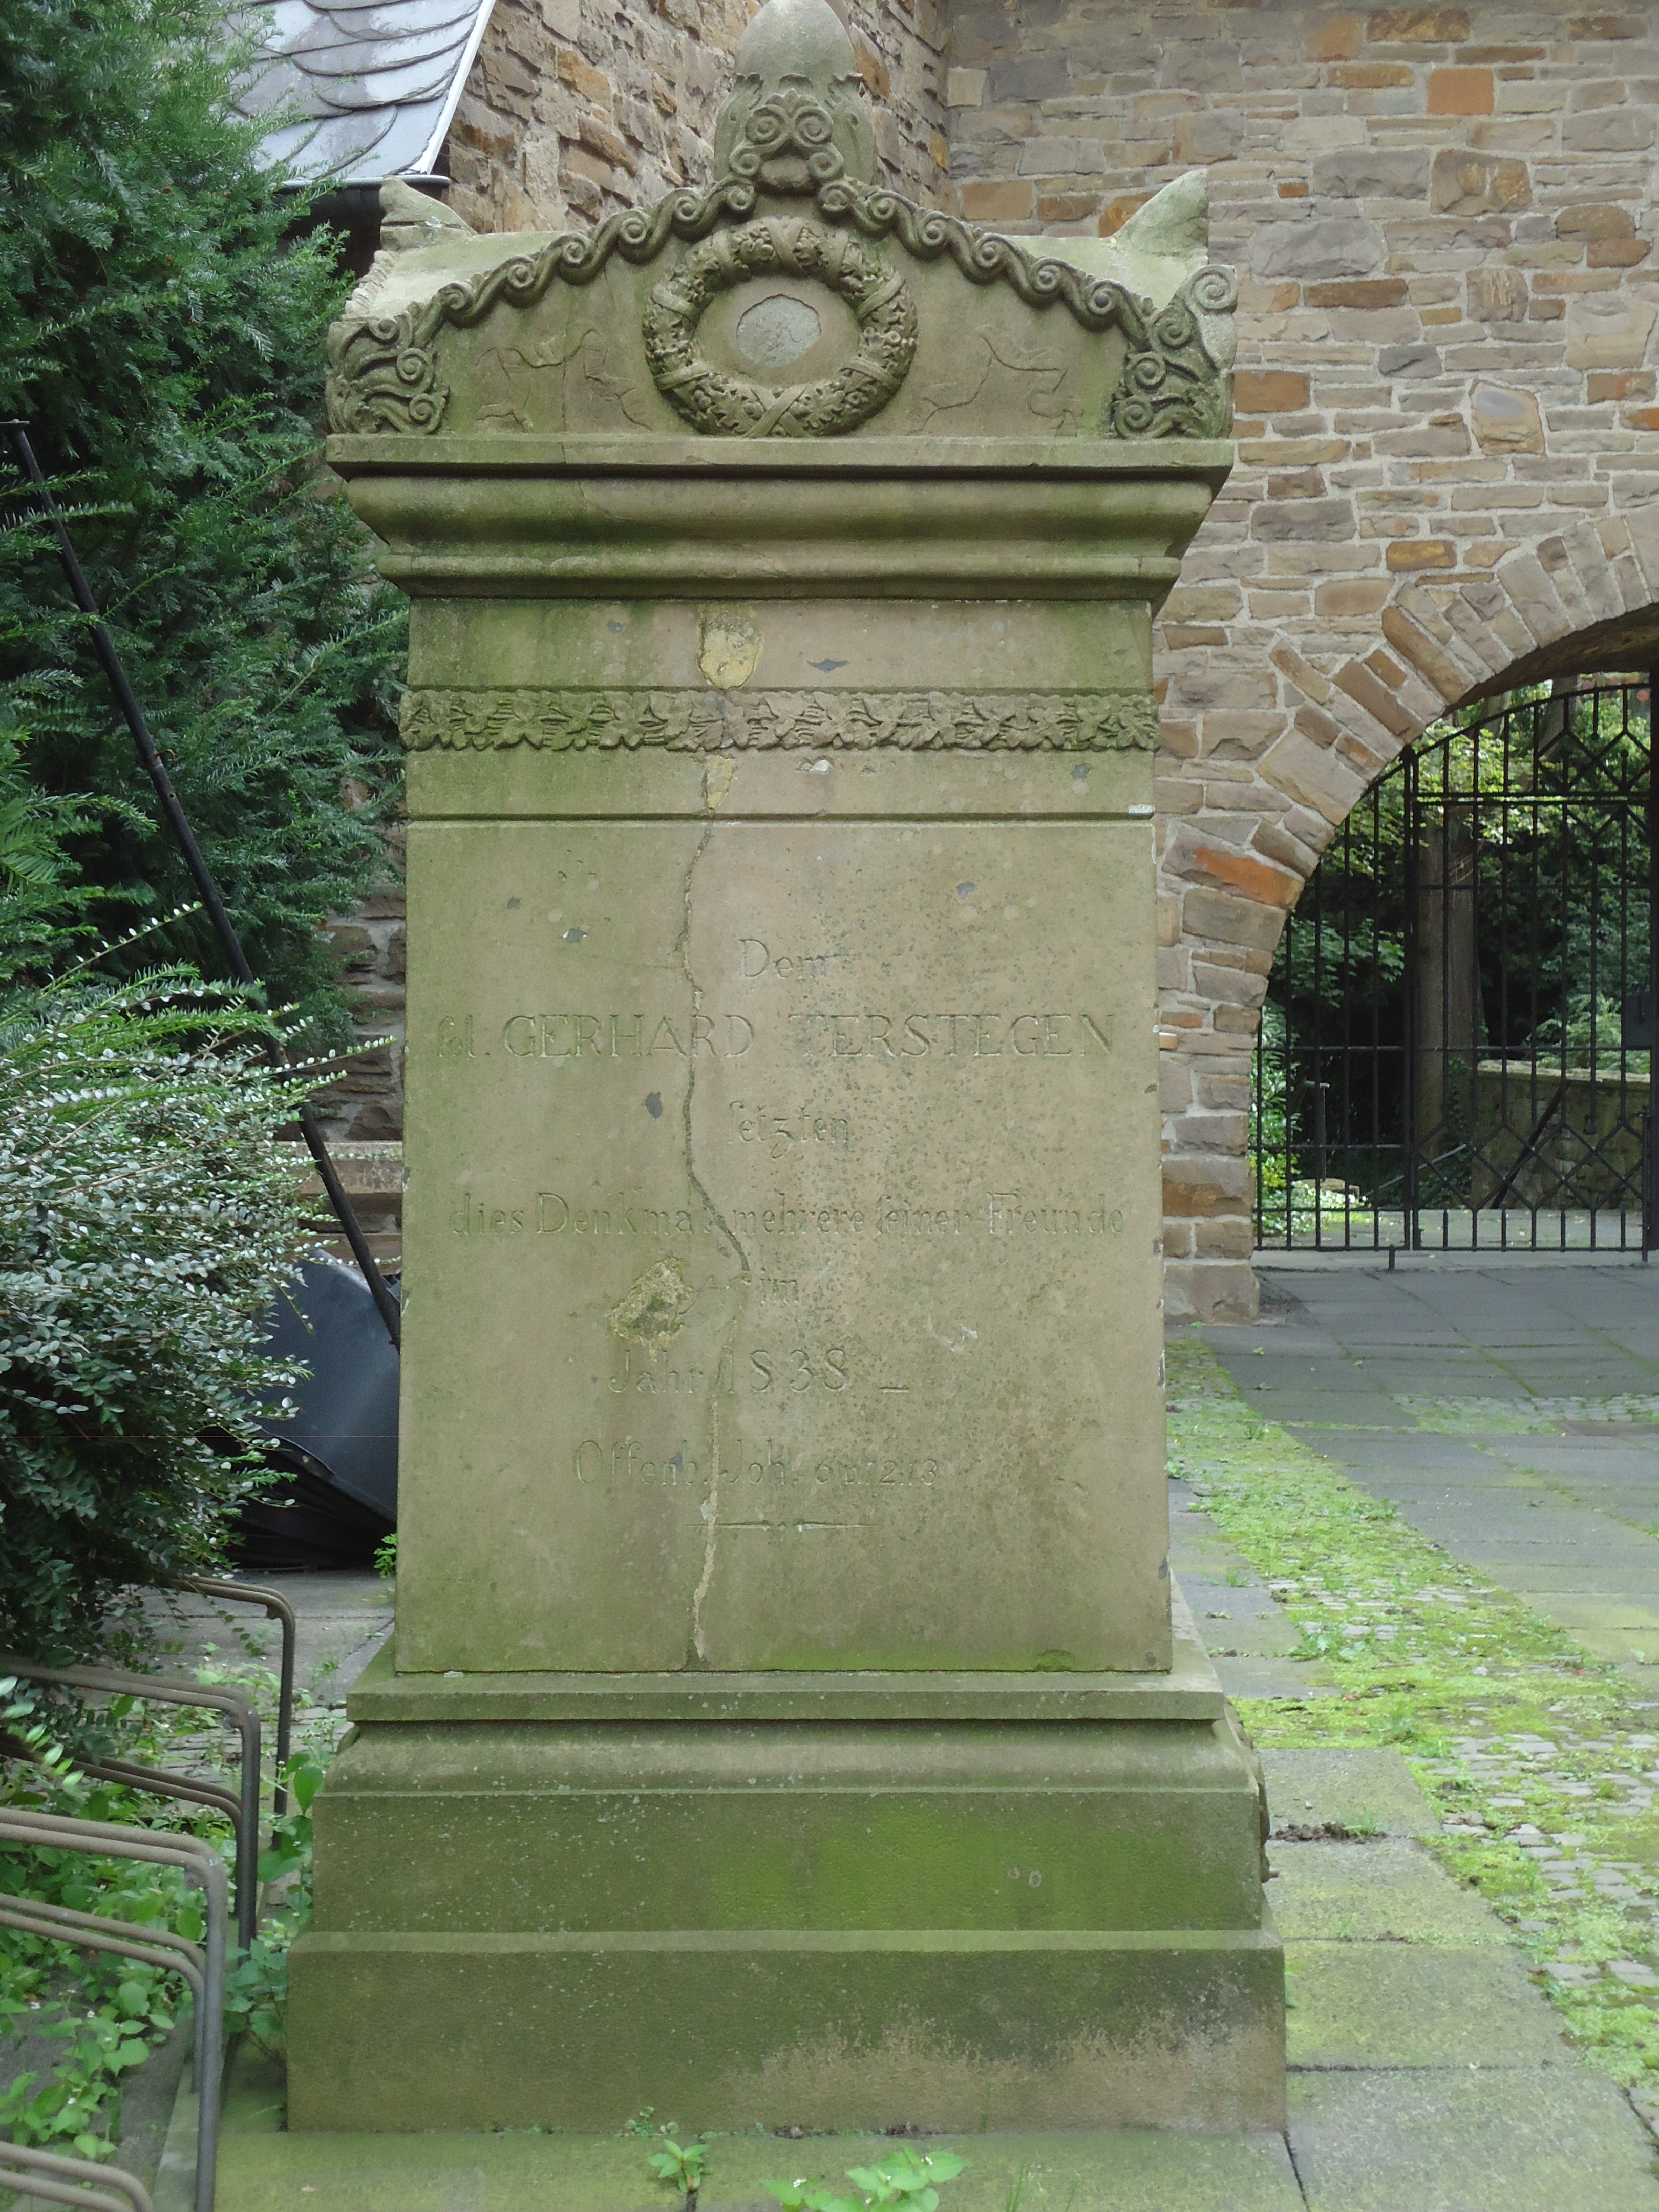 Памятник близ места погребения Г.Терстегена, Мюльхайм